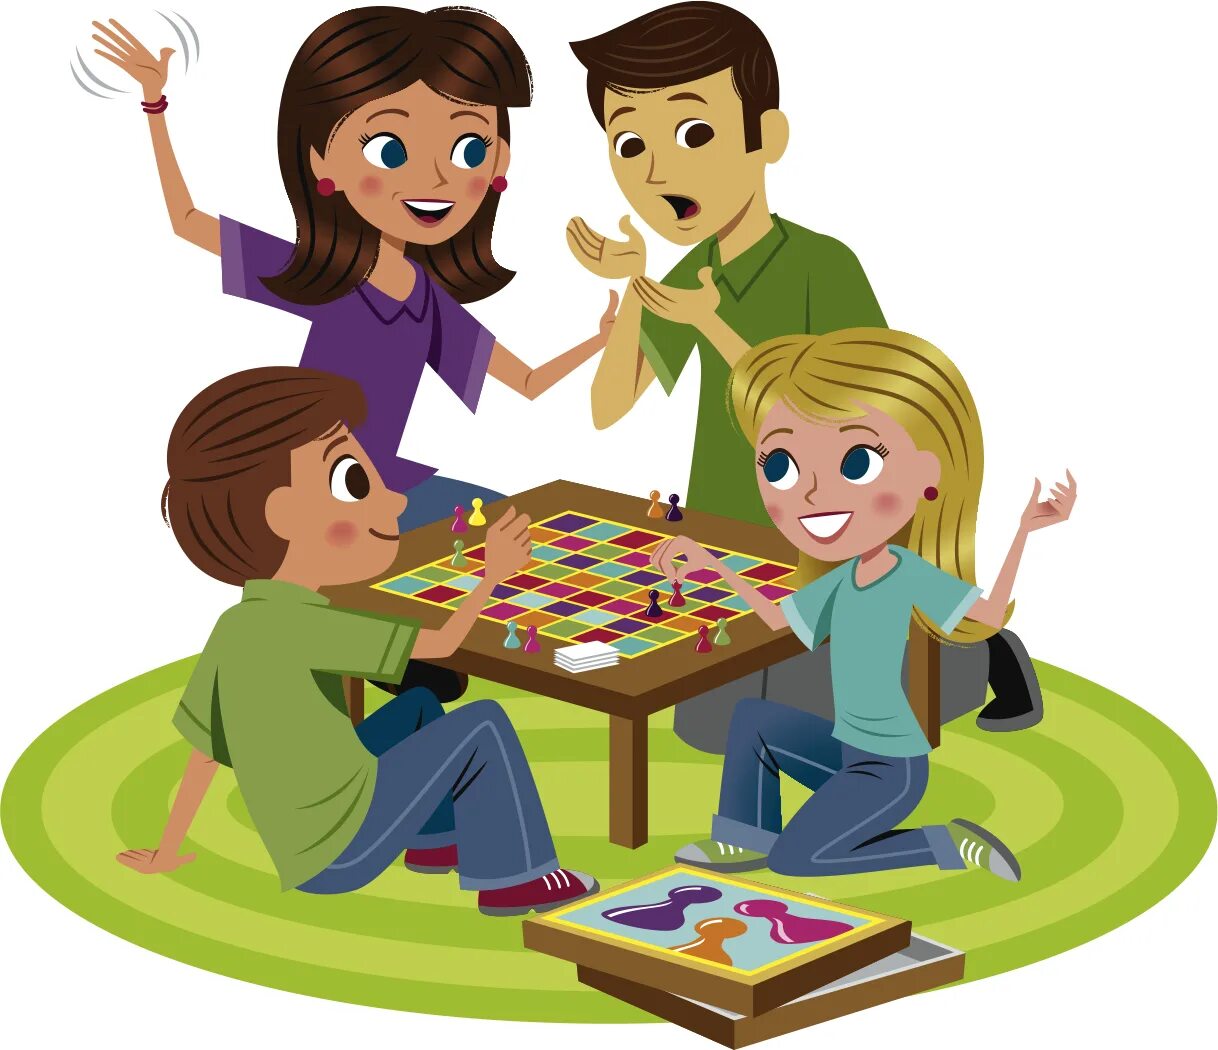 Friends games day. Семейные игры. Дети играют в настольные игры. Игры родителей с детьми. Игры детей с родителями.